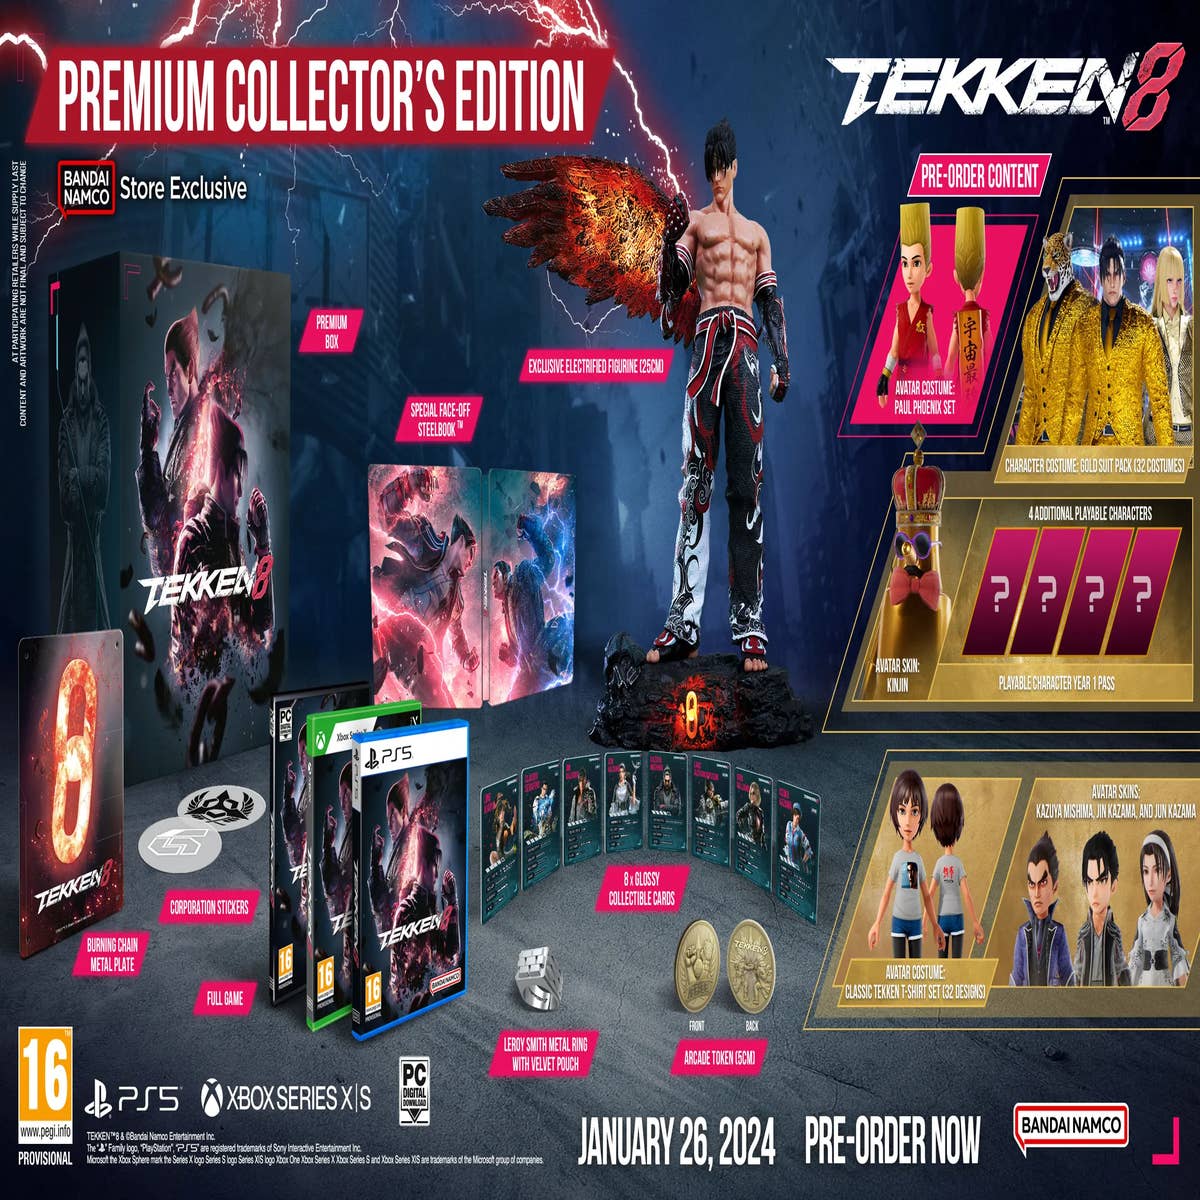 Confira os Requisitos do PC para Tekken 8, Notícias de Hideki